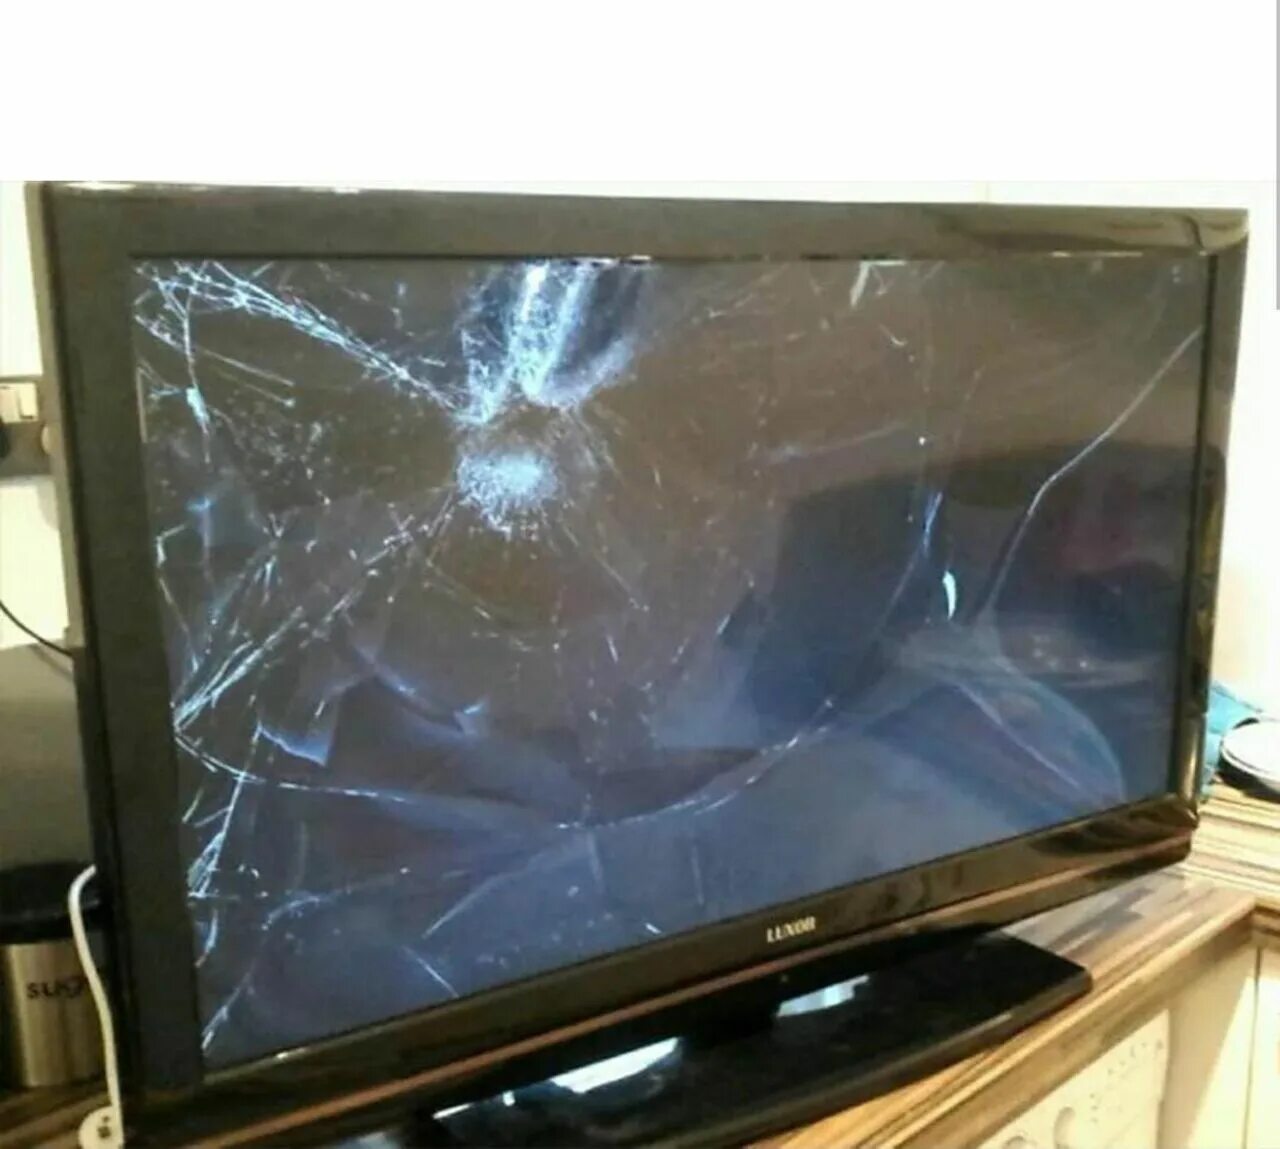 Починить разбитый телевизор. Разбитый телевизор Филипс. Сломанный плазменный телевизор. Разбитый монитор телевизора. Телевизор с разбитым экраном.